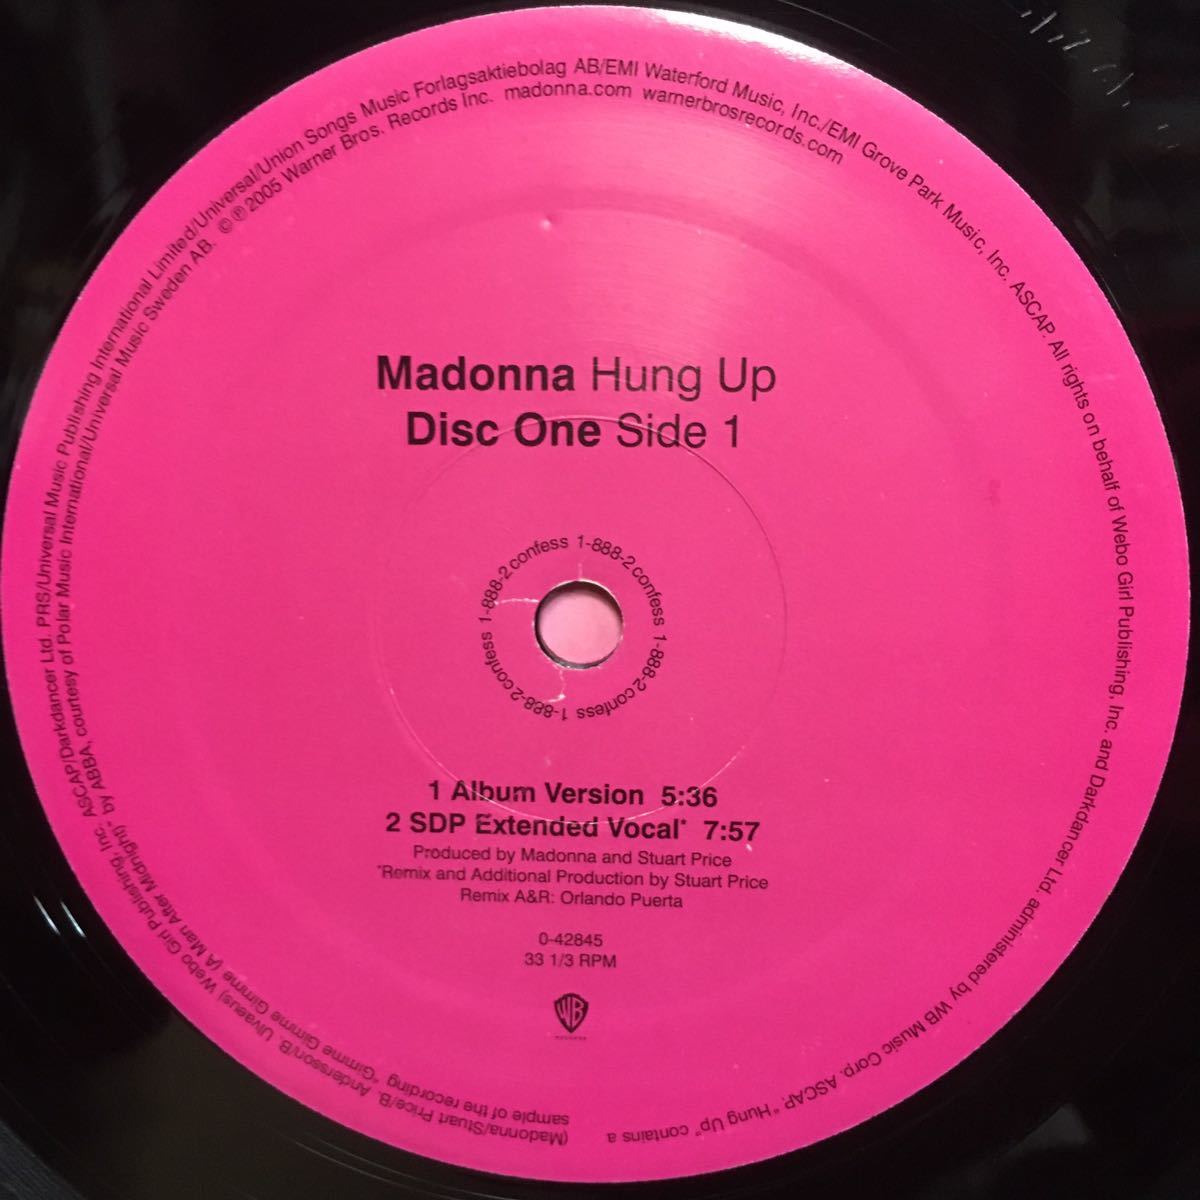 12' 2枚組US盤 MADONNA / HUNG UP ※ Album Version / Tracy Young's Get Up And Dance Groove / SDP Extended Vocal 他の画像3